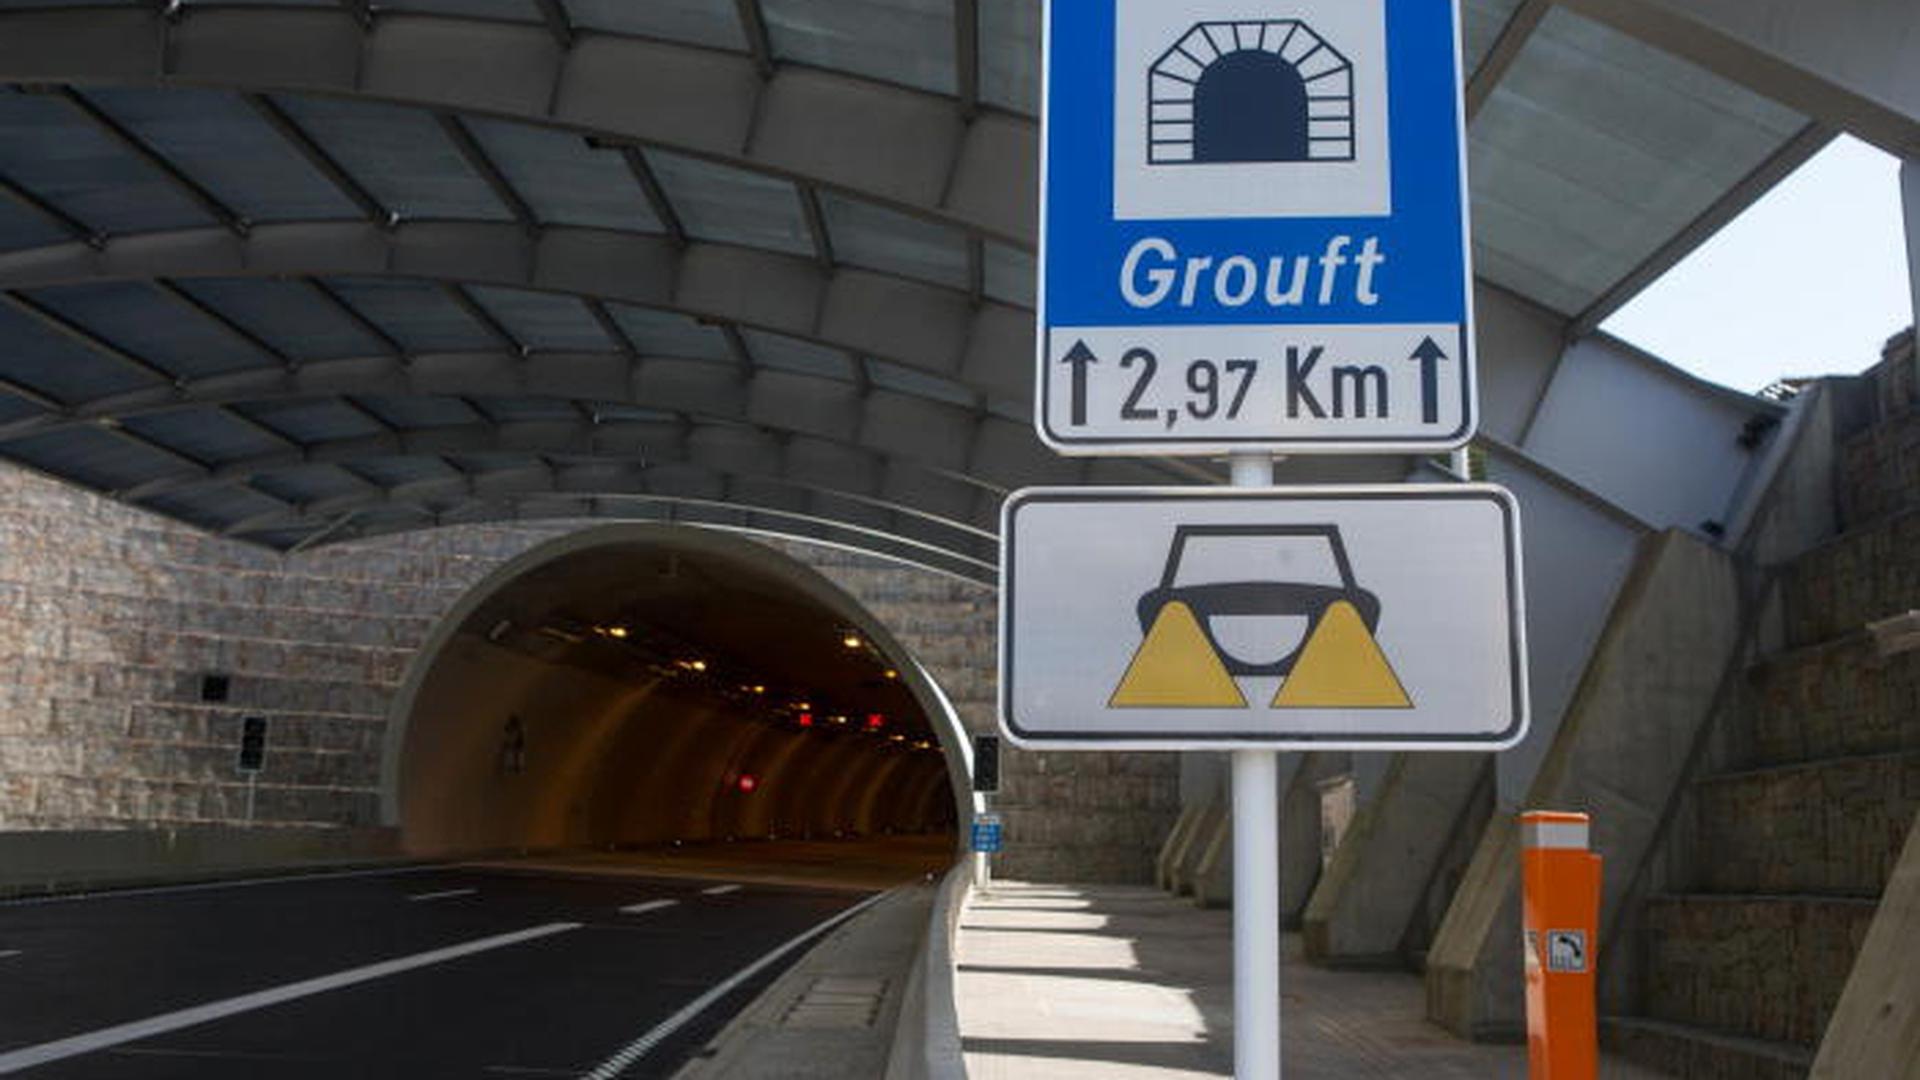 Le tunnel Grouft, sur l'A7, sera fermé ce dimanche matin, pour les besoins d'un exercice de sécurité.